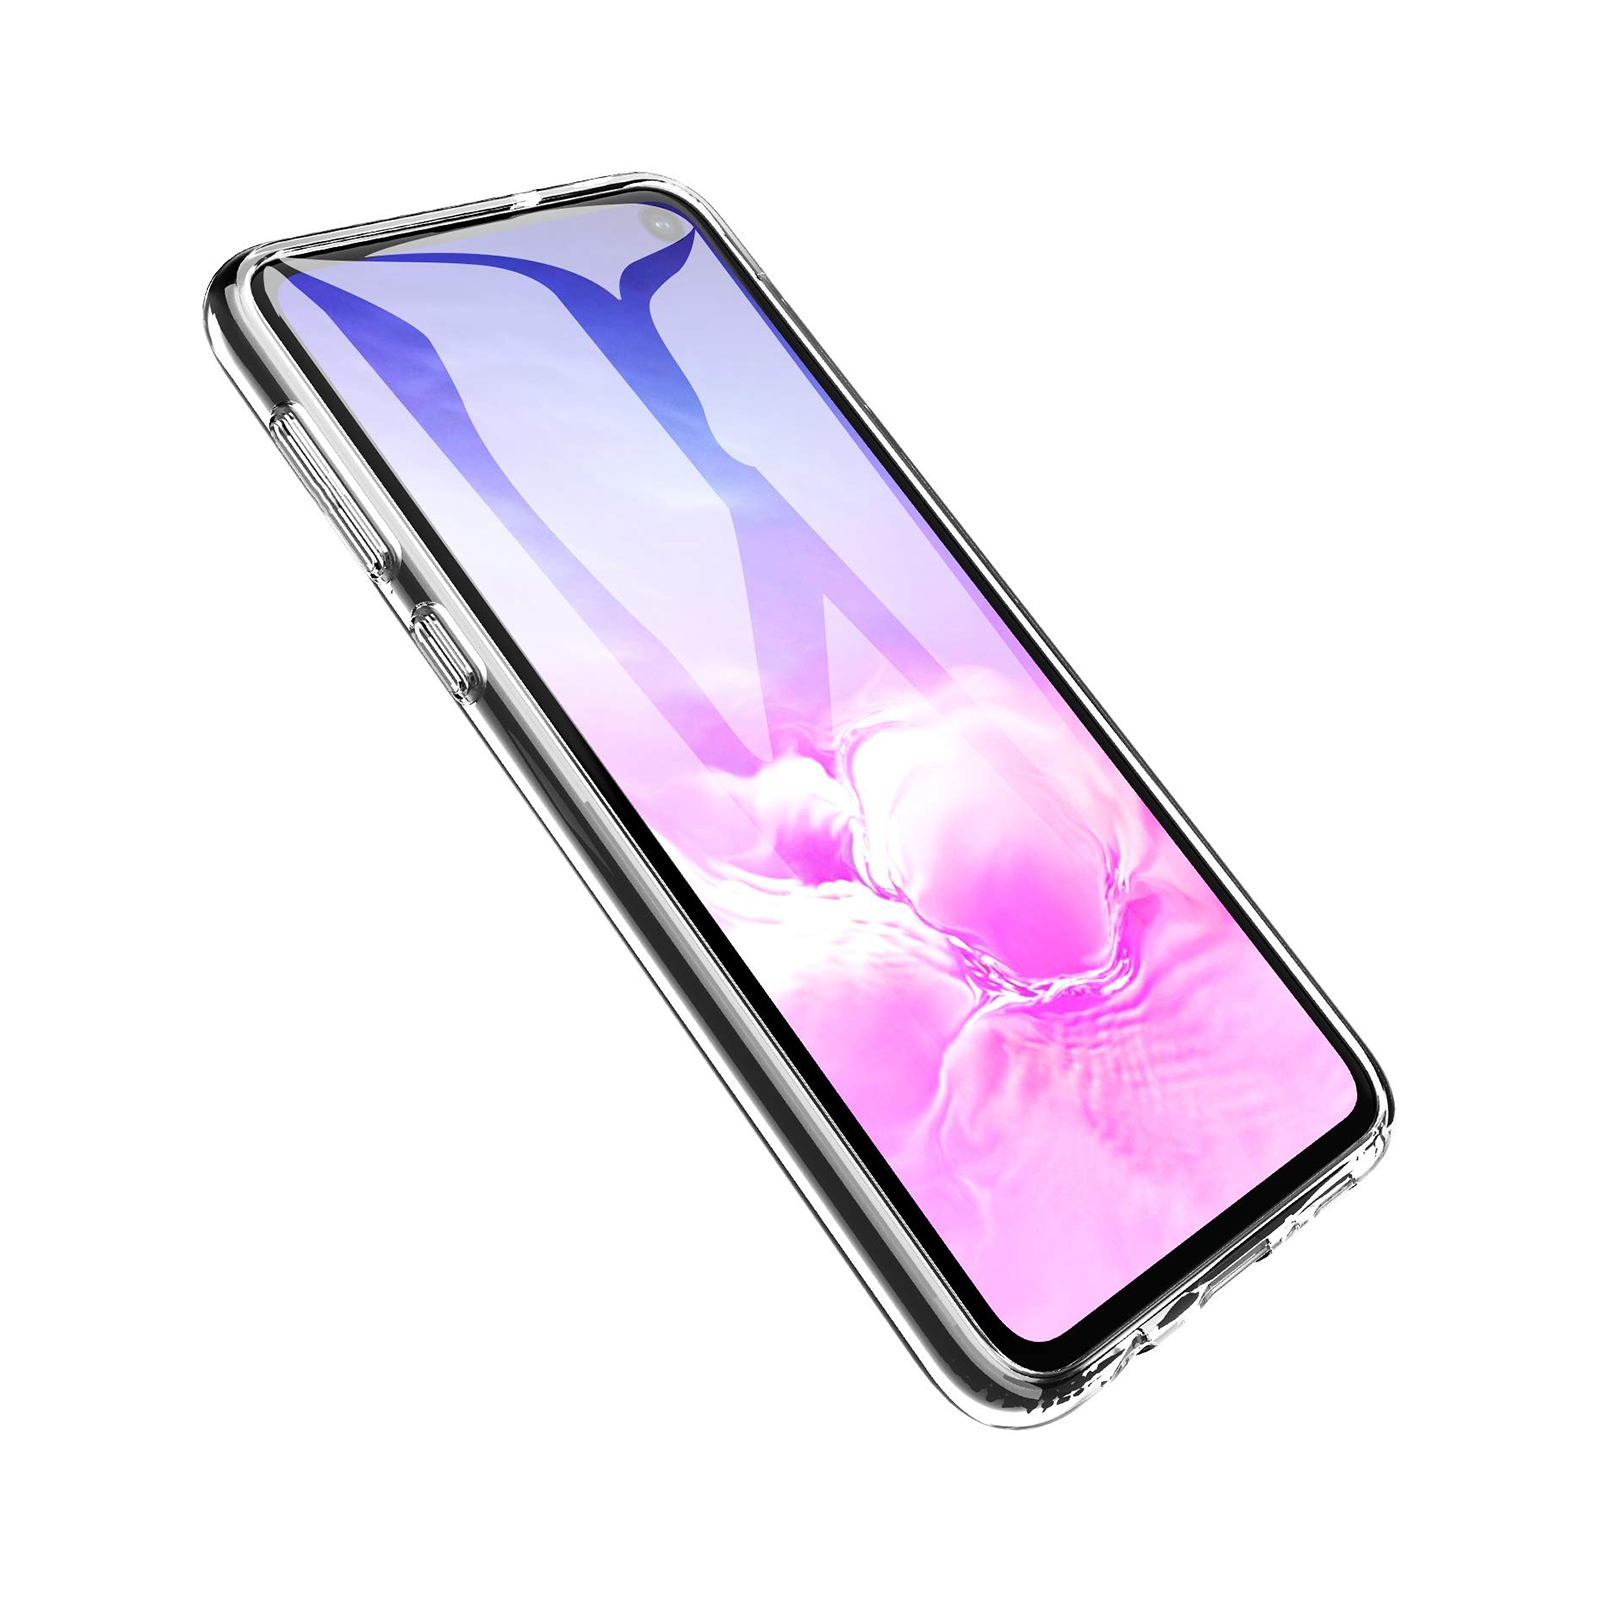 Чехол для мобильного телефона Laudtec для SAMSUNG Galaxy S10e Clear tpu (Transperent) (LC-GS10e) изображение 6